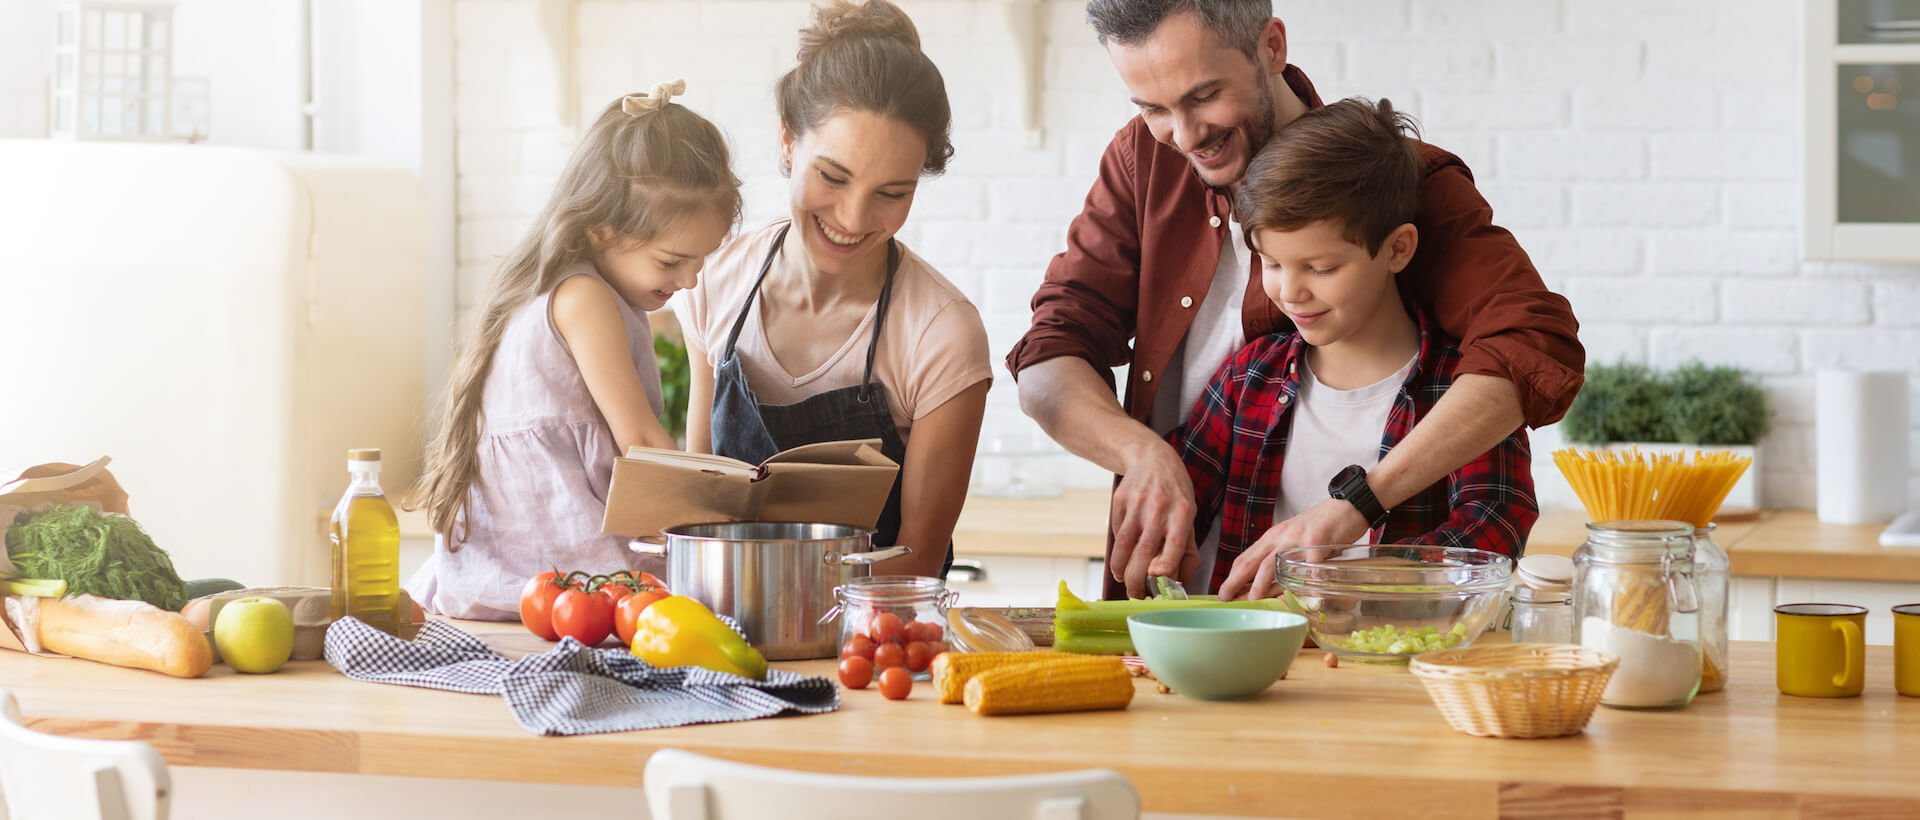 Famille heureuse préparant un repas, coupant des légumes sur le comptoir de la cuisine